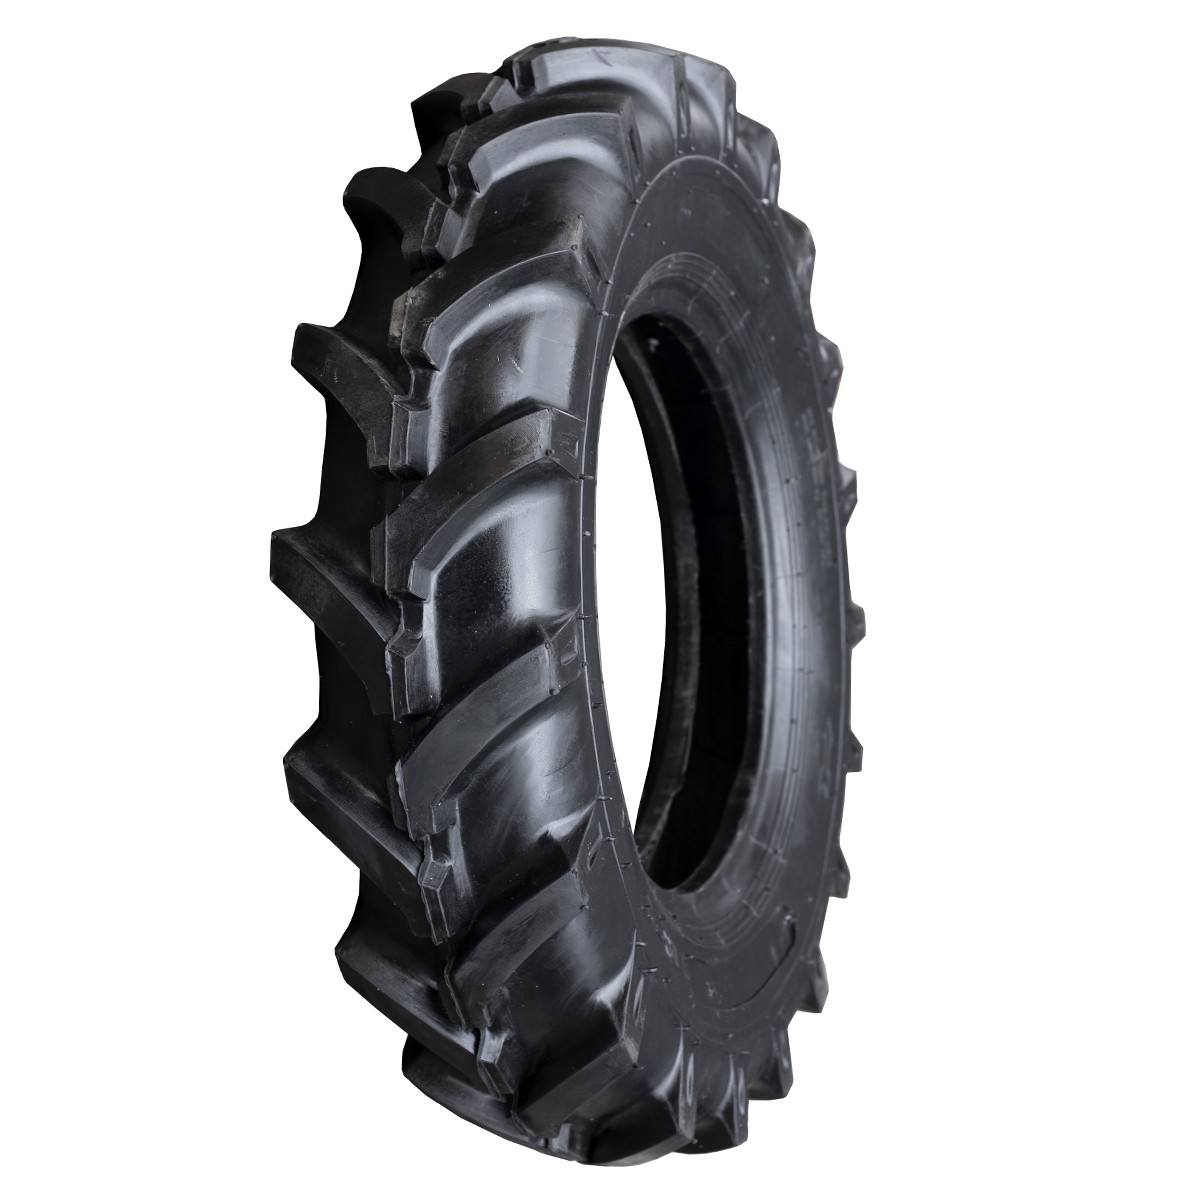 Agricultural tire 7.00-14 6PR 7-14 7x14 FIR